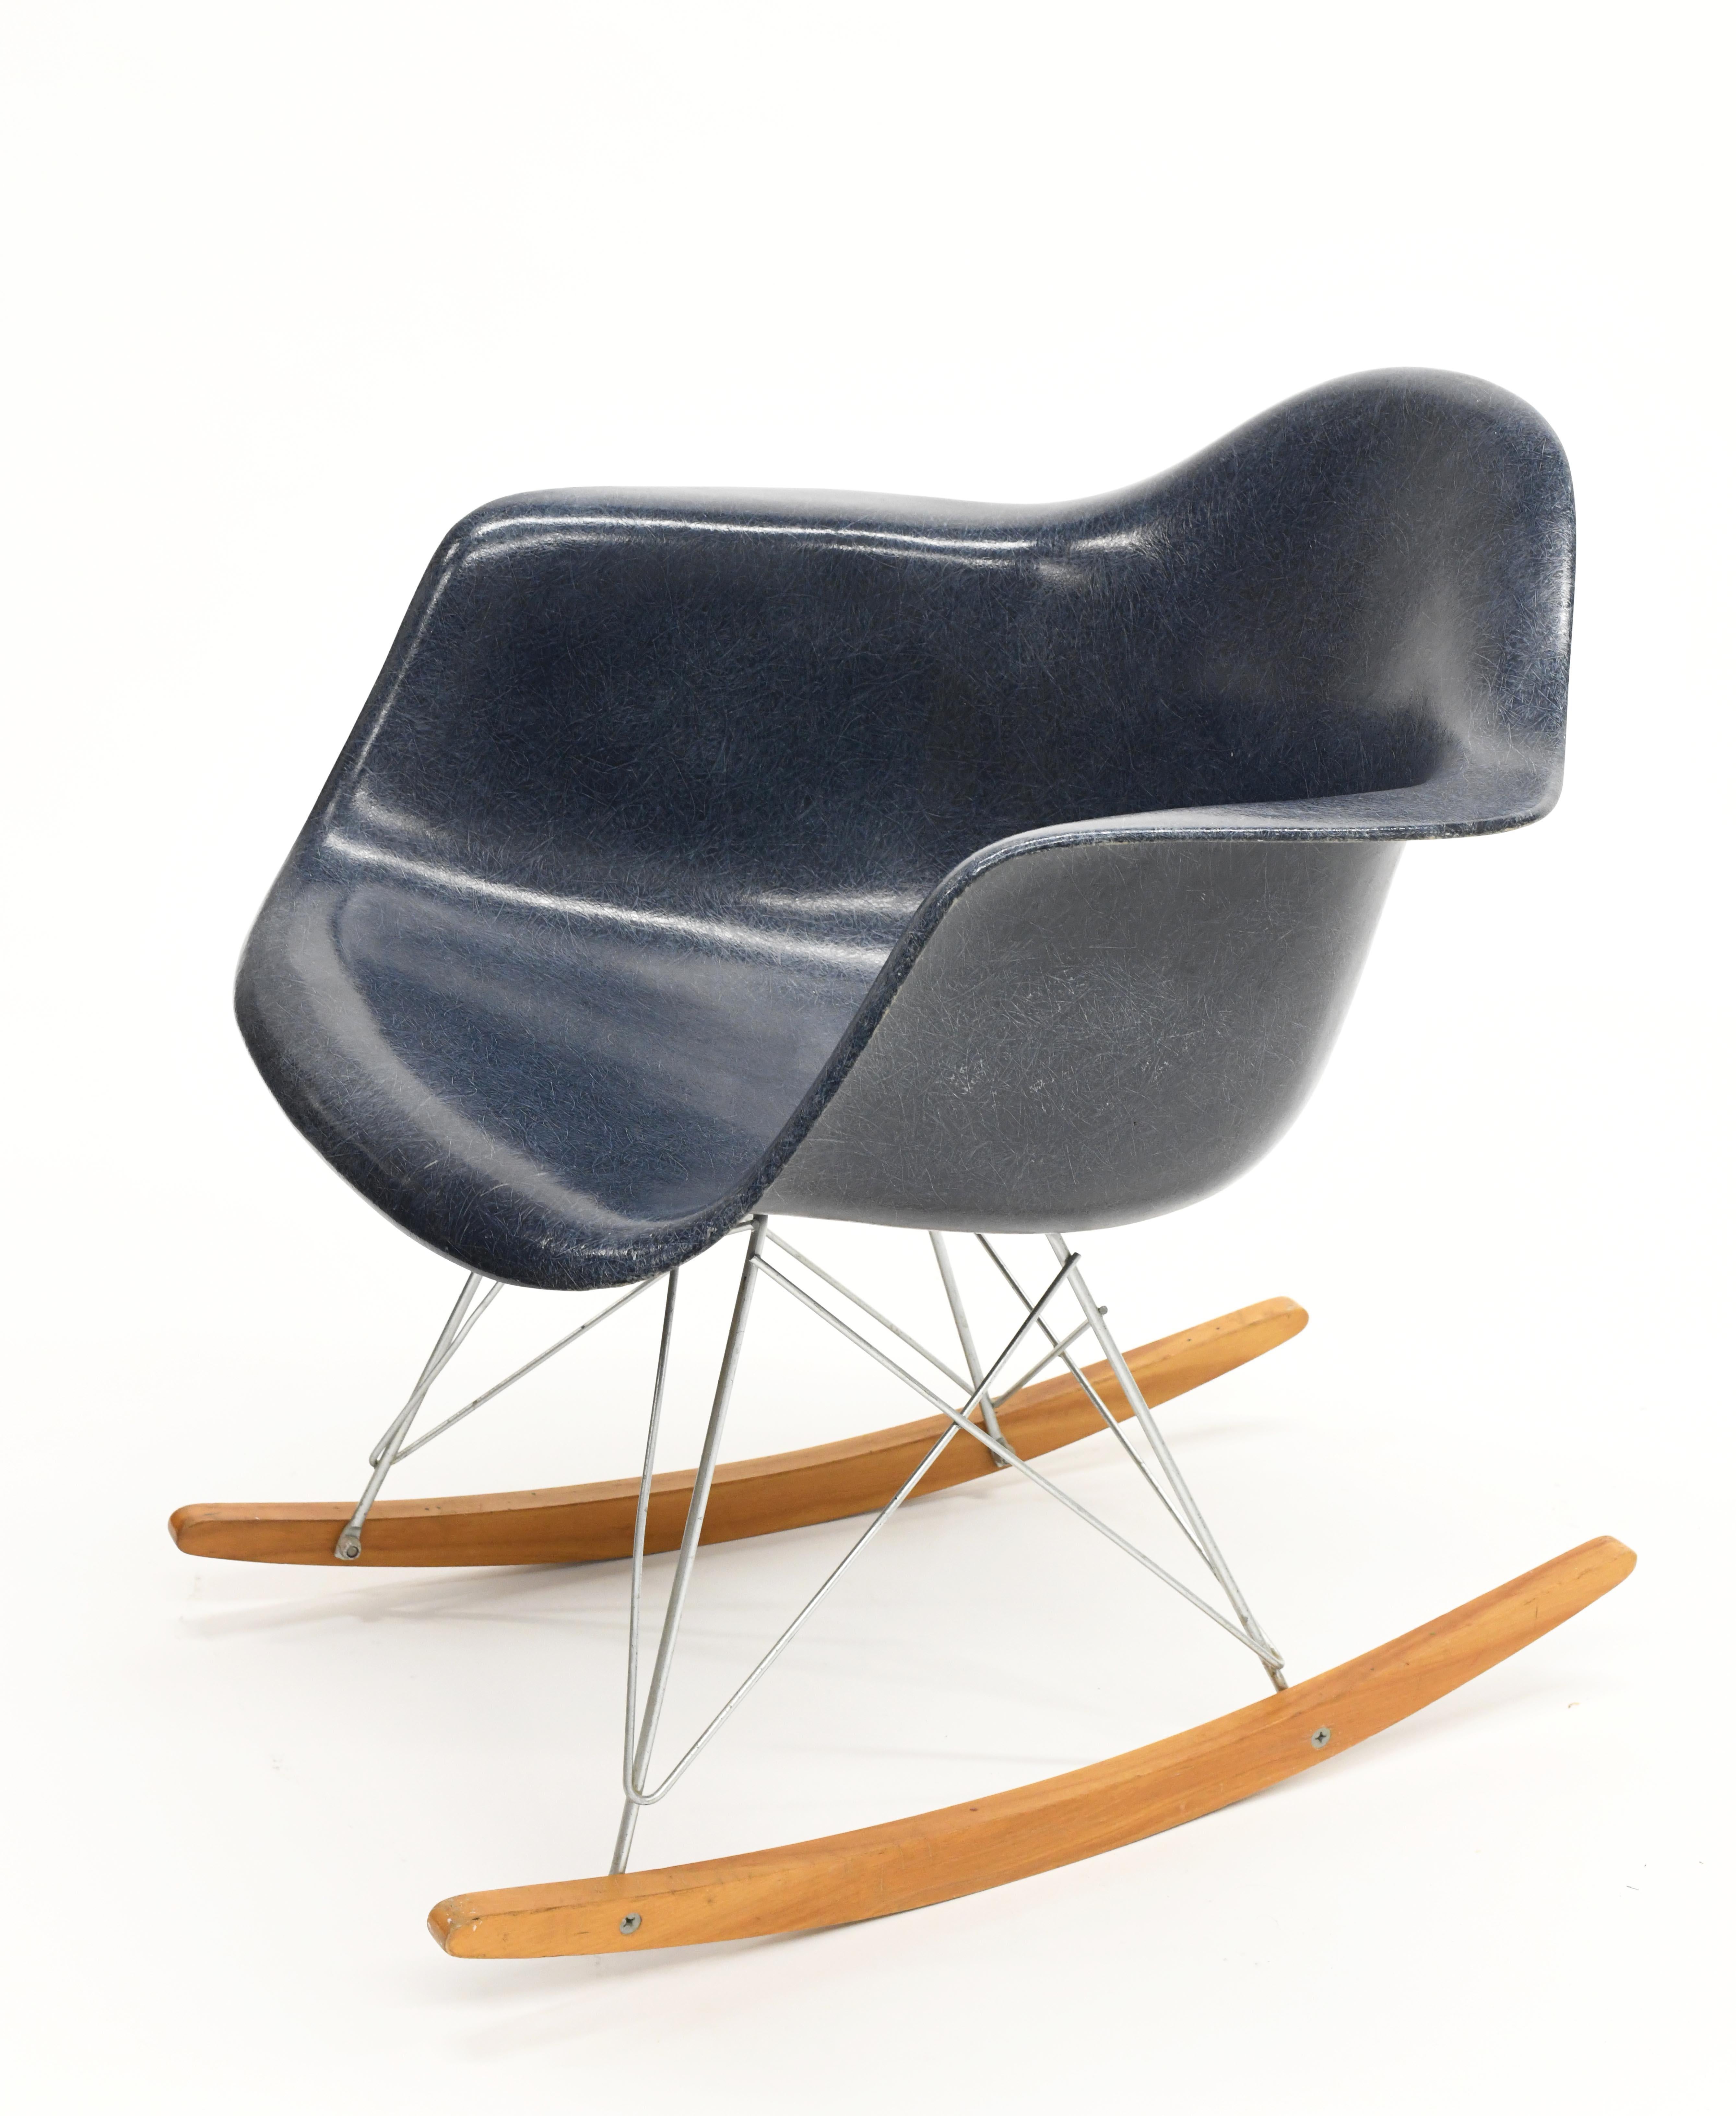 Originaler Vintage-Schaukelstuhl von Charles & Ray Eames für Herman Miller. Der Sockel ist ein Original und keine Nachbildung. Die Stoßdämpferbefestigungen sind in gutem Zustand. Der Stuhl wurde 1962 von Herman Miller erworben.